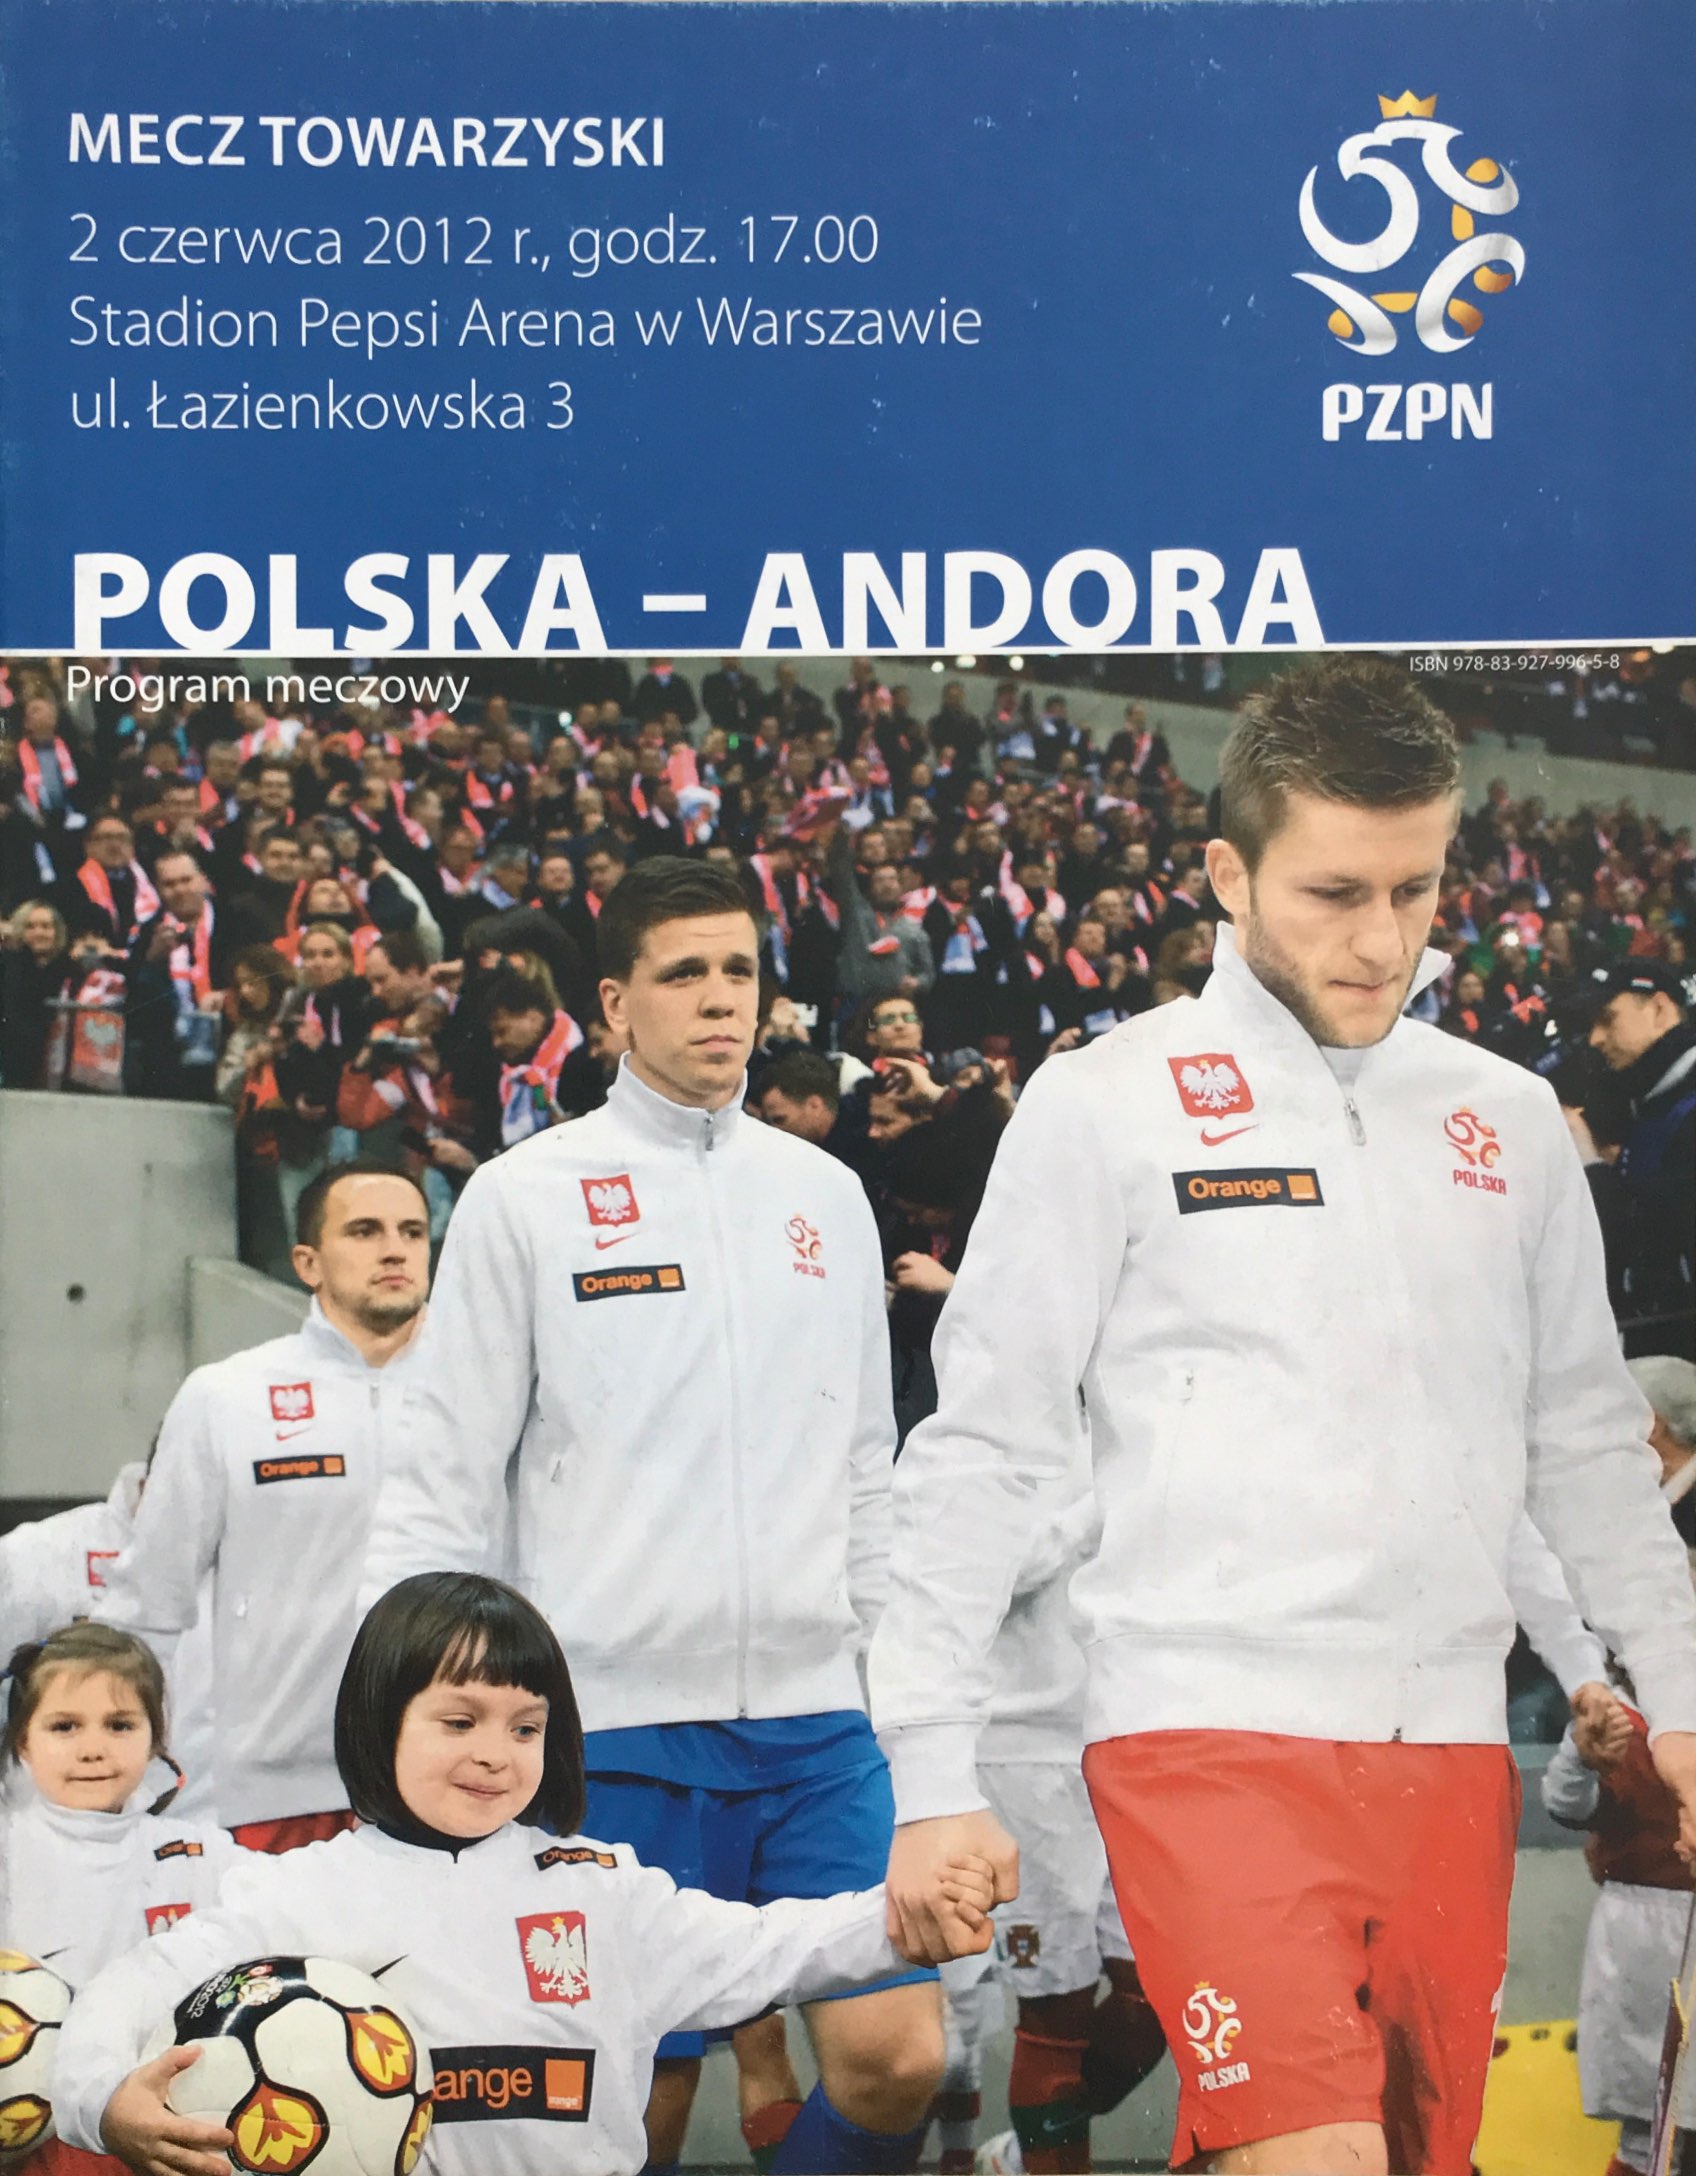 Program meczowy Polska - Andora 4:0 (02.06.2012).